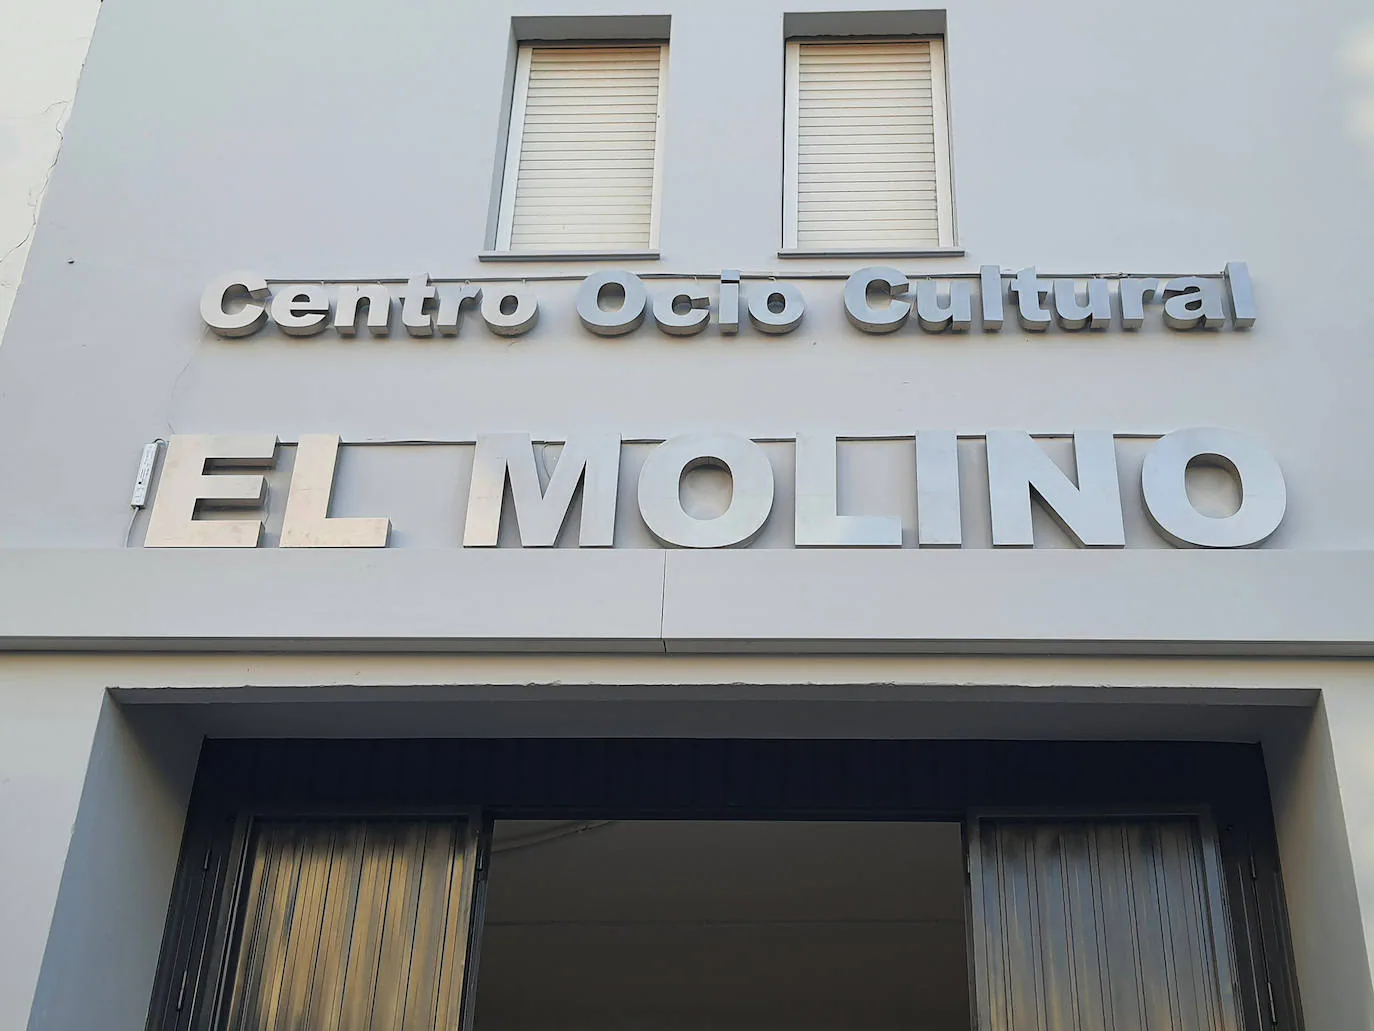 Esta tarde se inaugura el Centro de ocio y cultural 'El Molino'